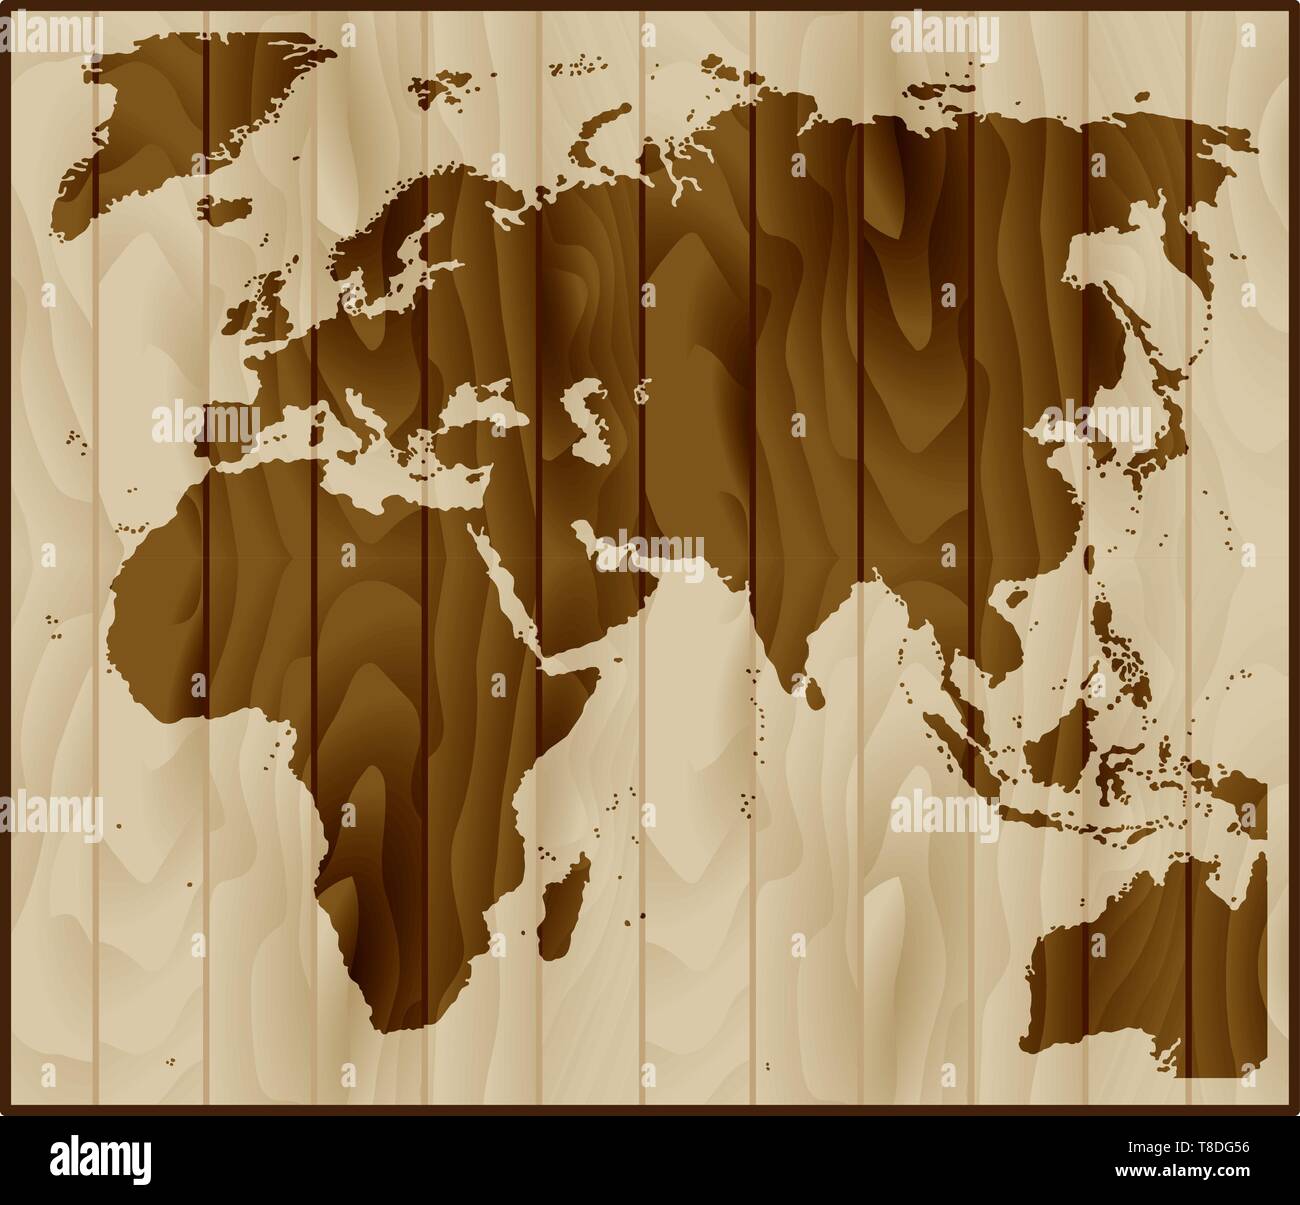 Europa, Asien und Afrika Karte auf Holz Hintergrund Stock Vektor